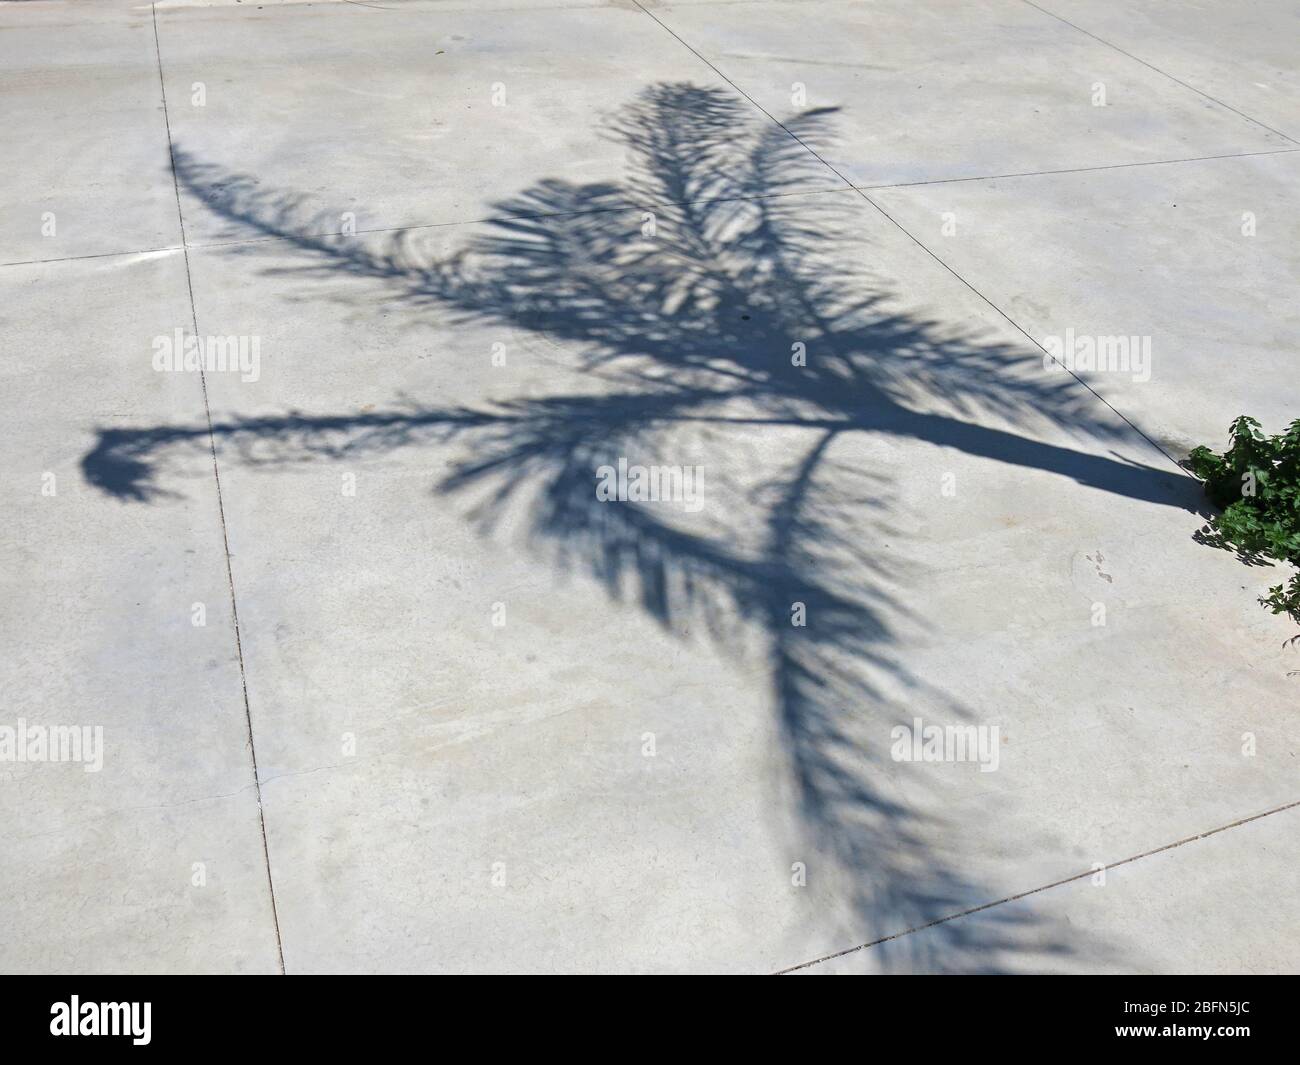 Ombre d'un jeune palmier sur un sol en béton. Concept : le minimalisme dans la photographie. Banque D'Images